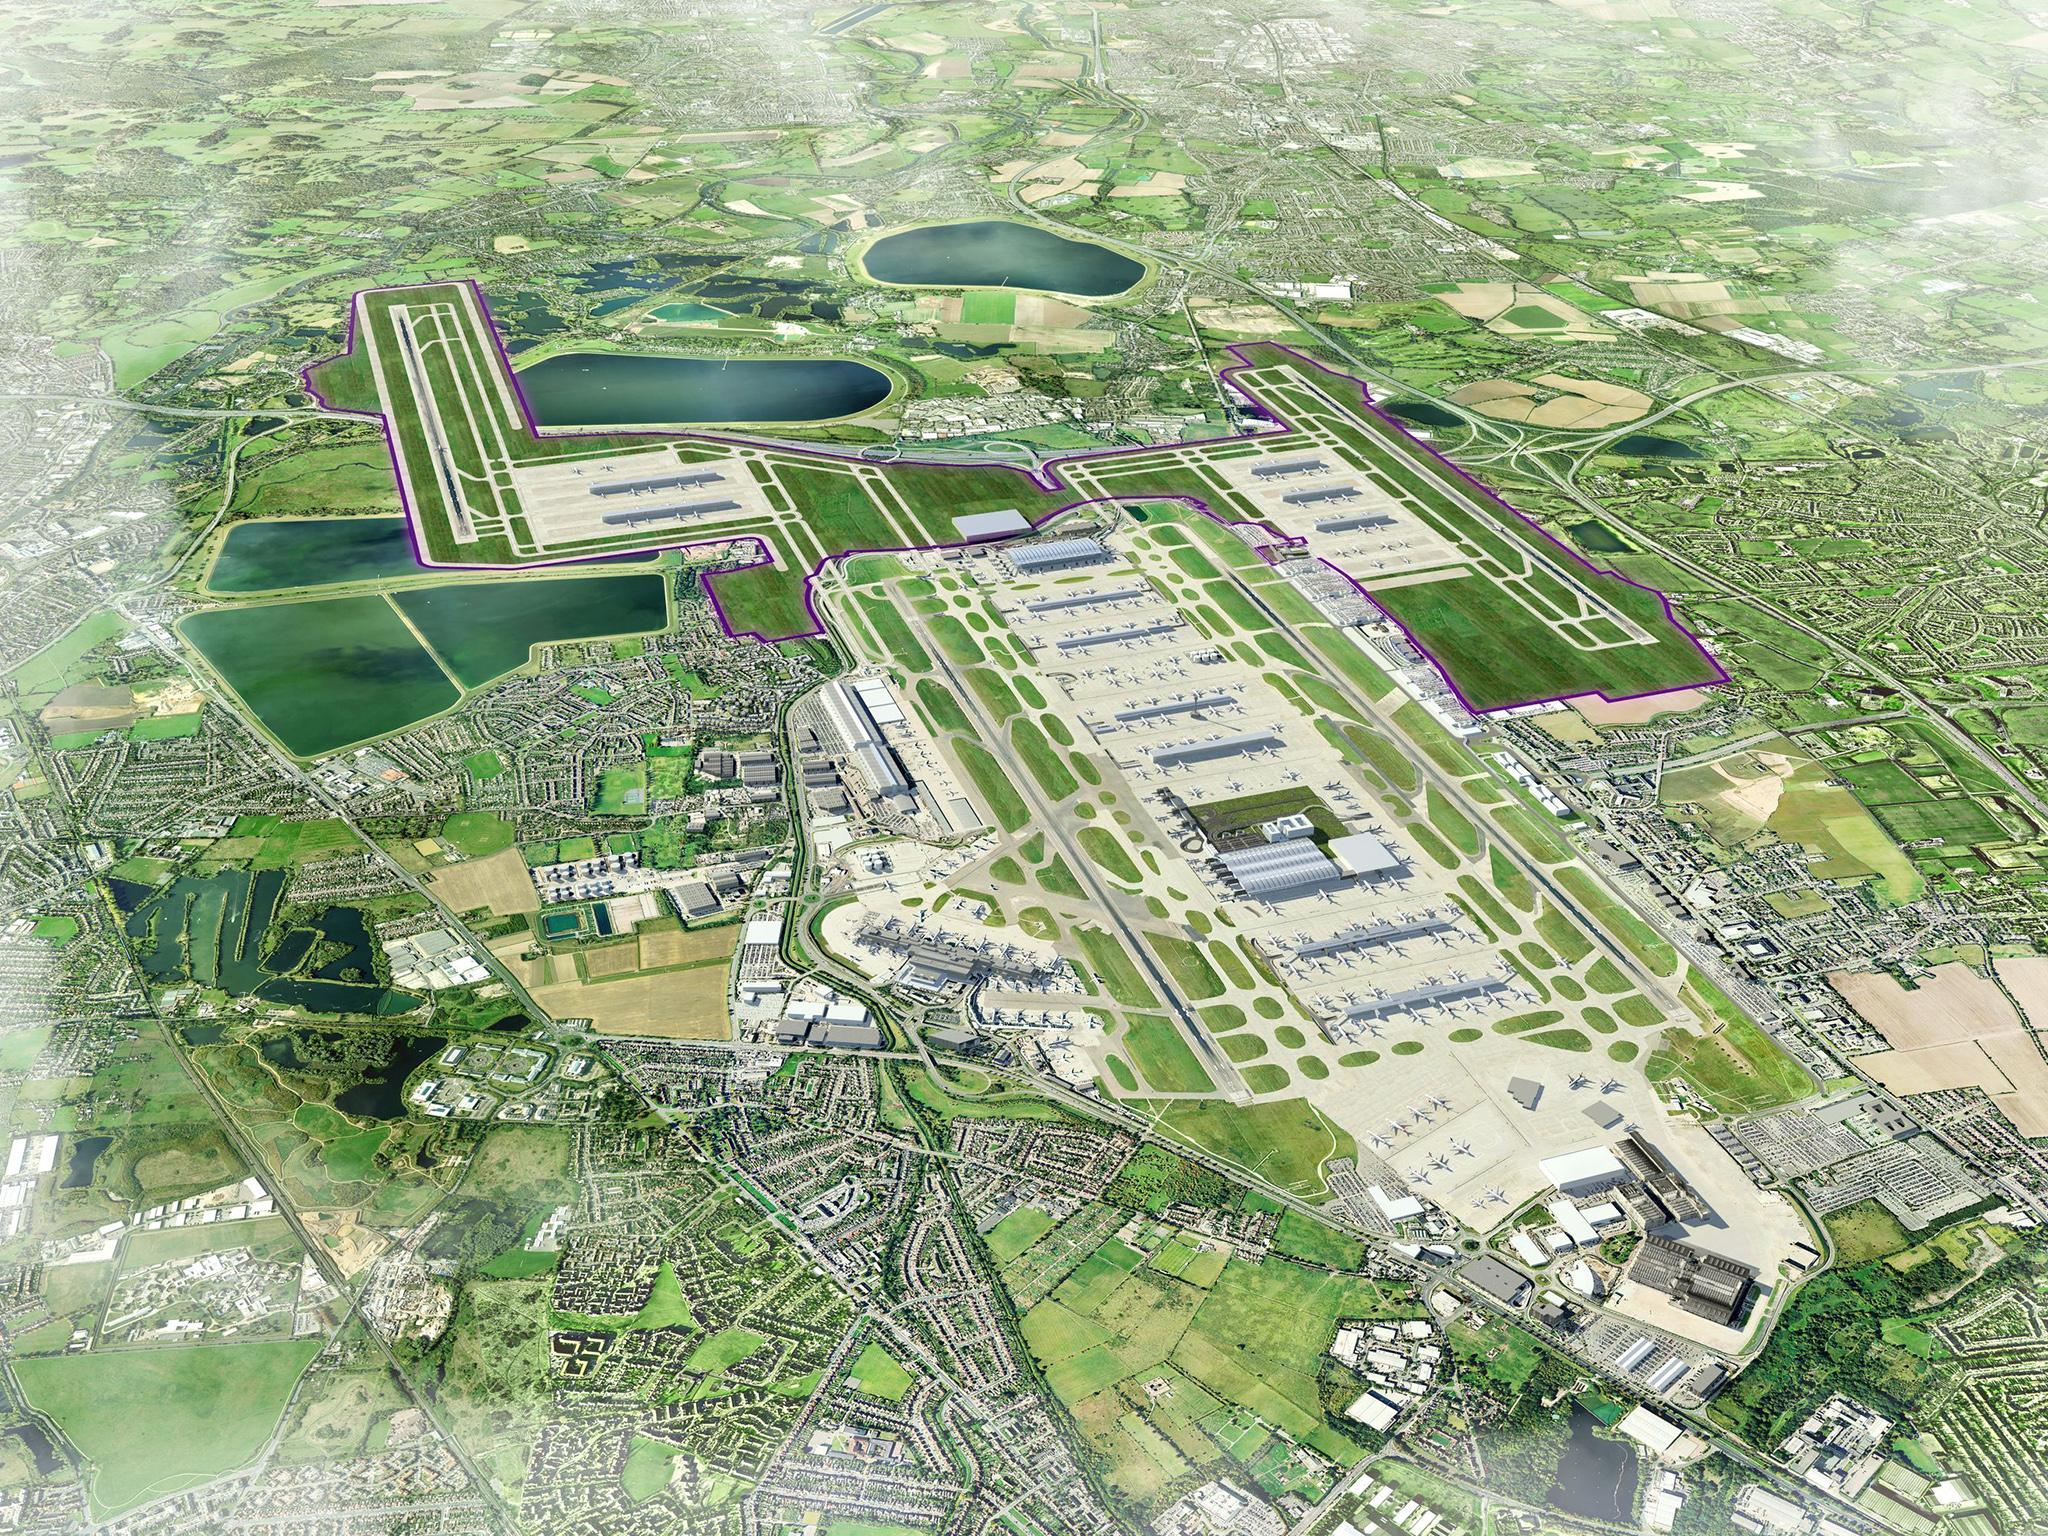 Heathrow expansion